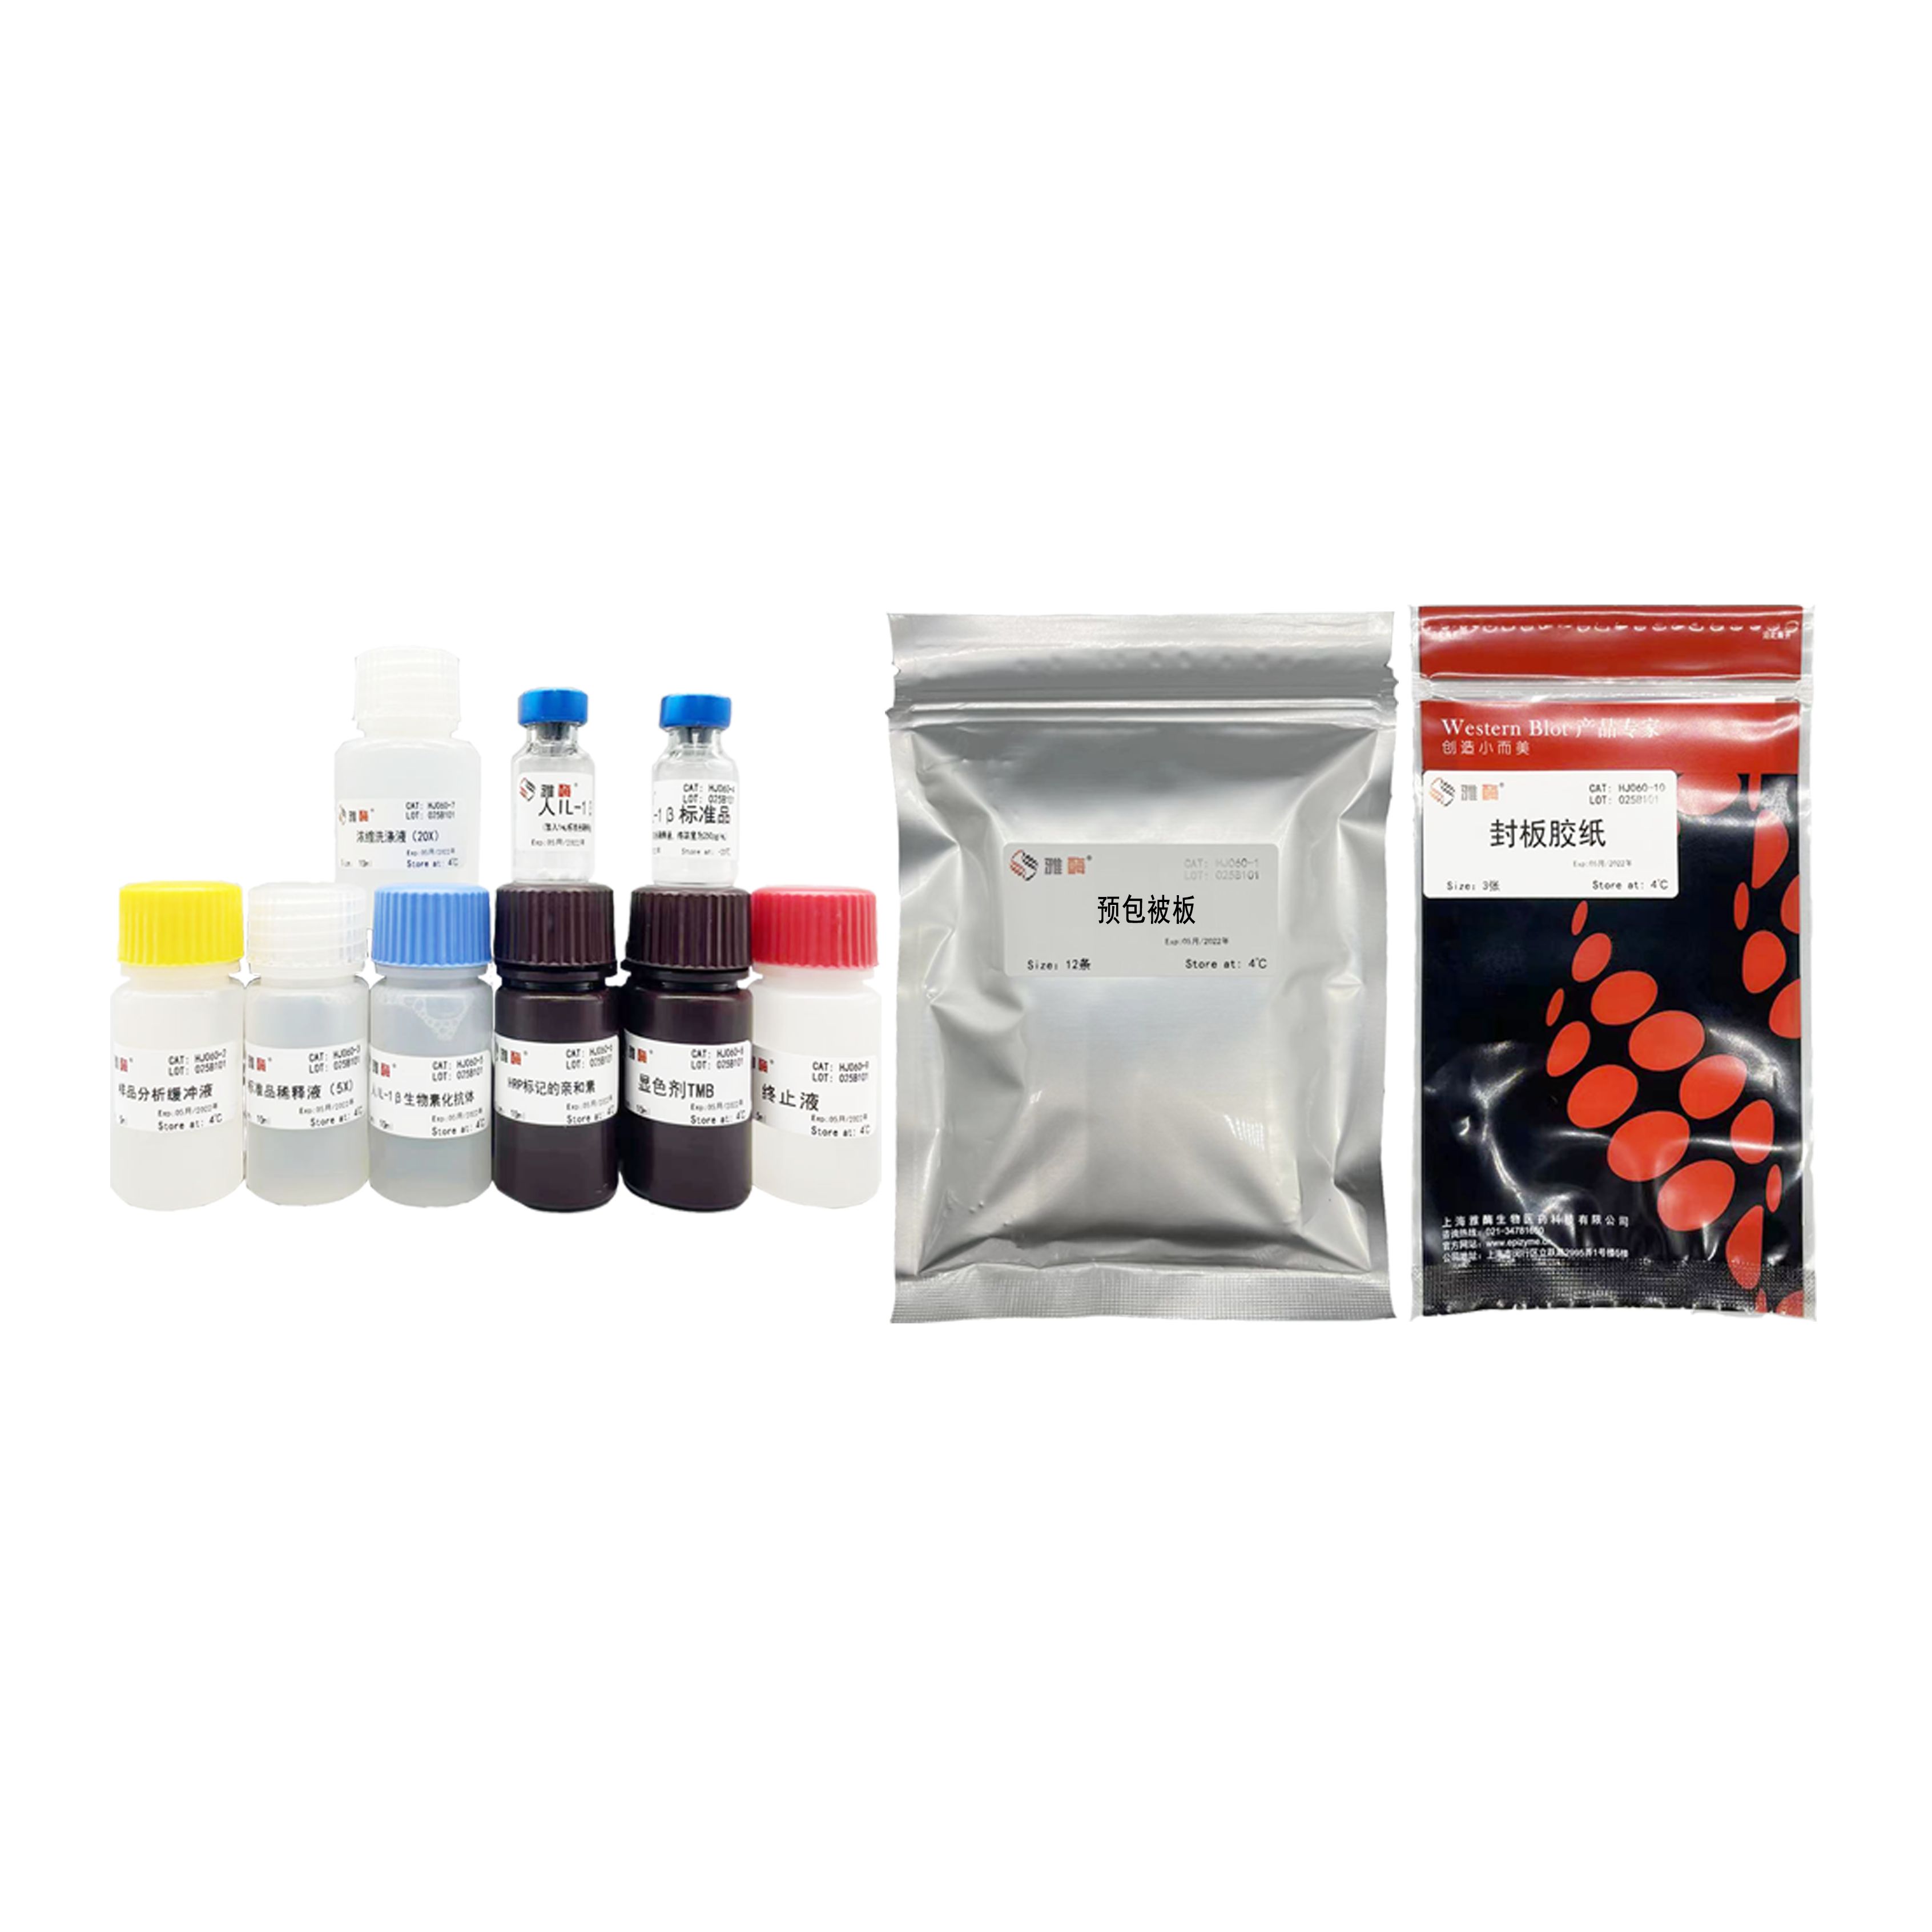 HJ024 人C反應蛋白酶聯免疫吸附測定試劑盒(超敏型)